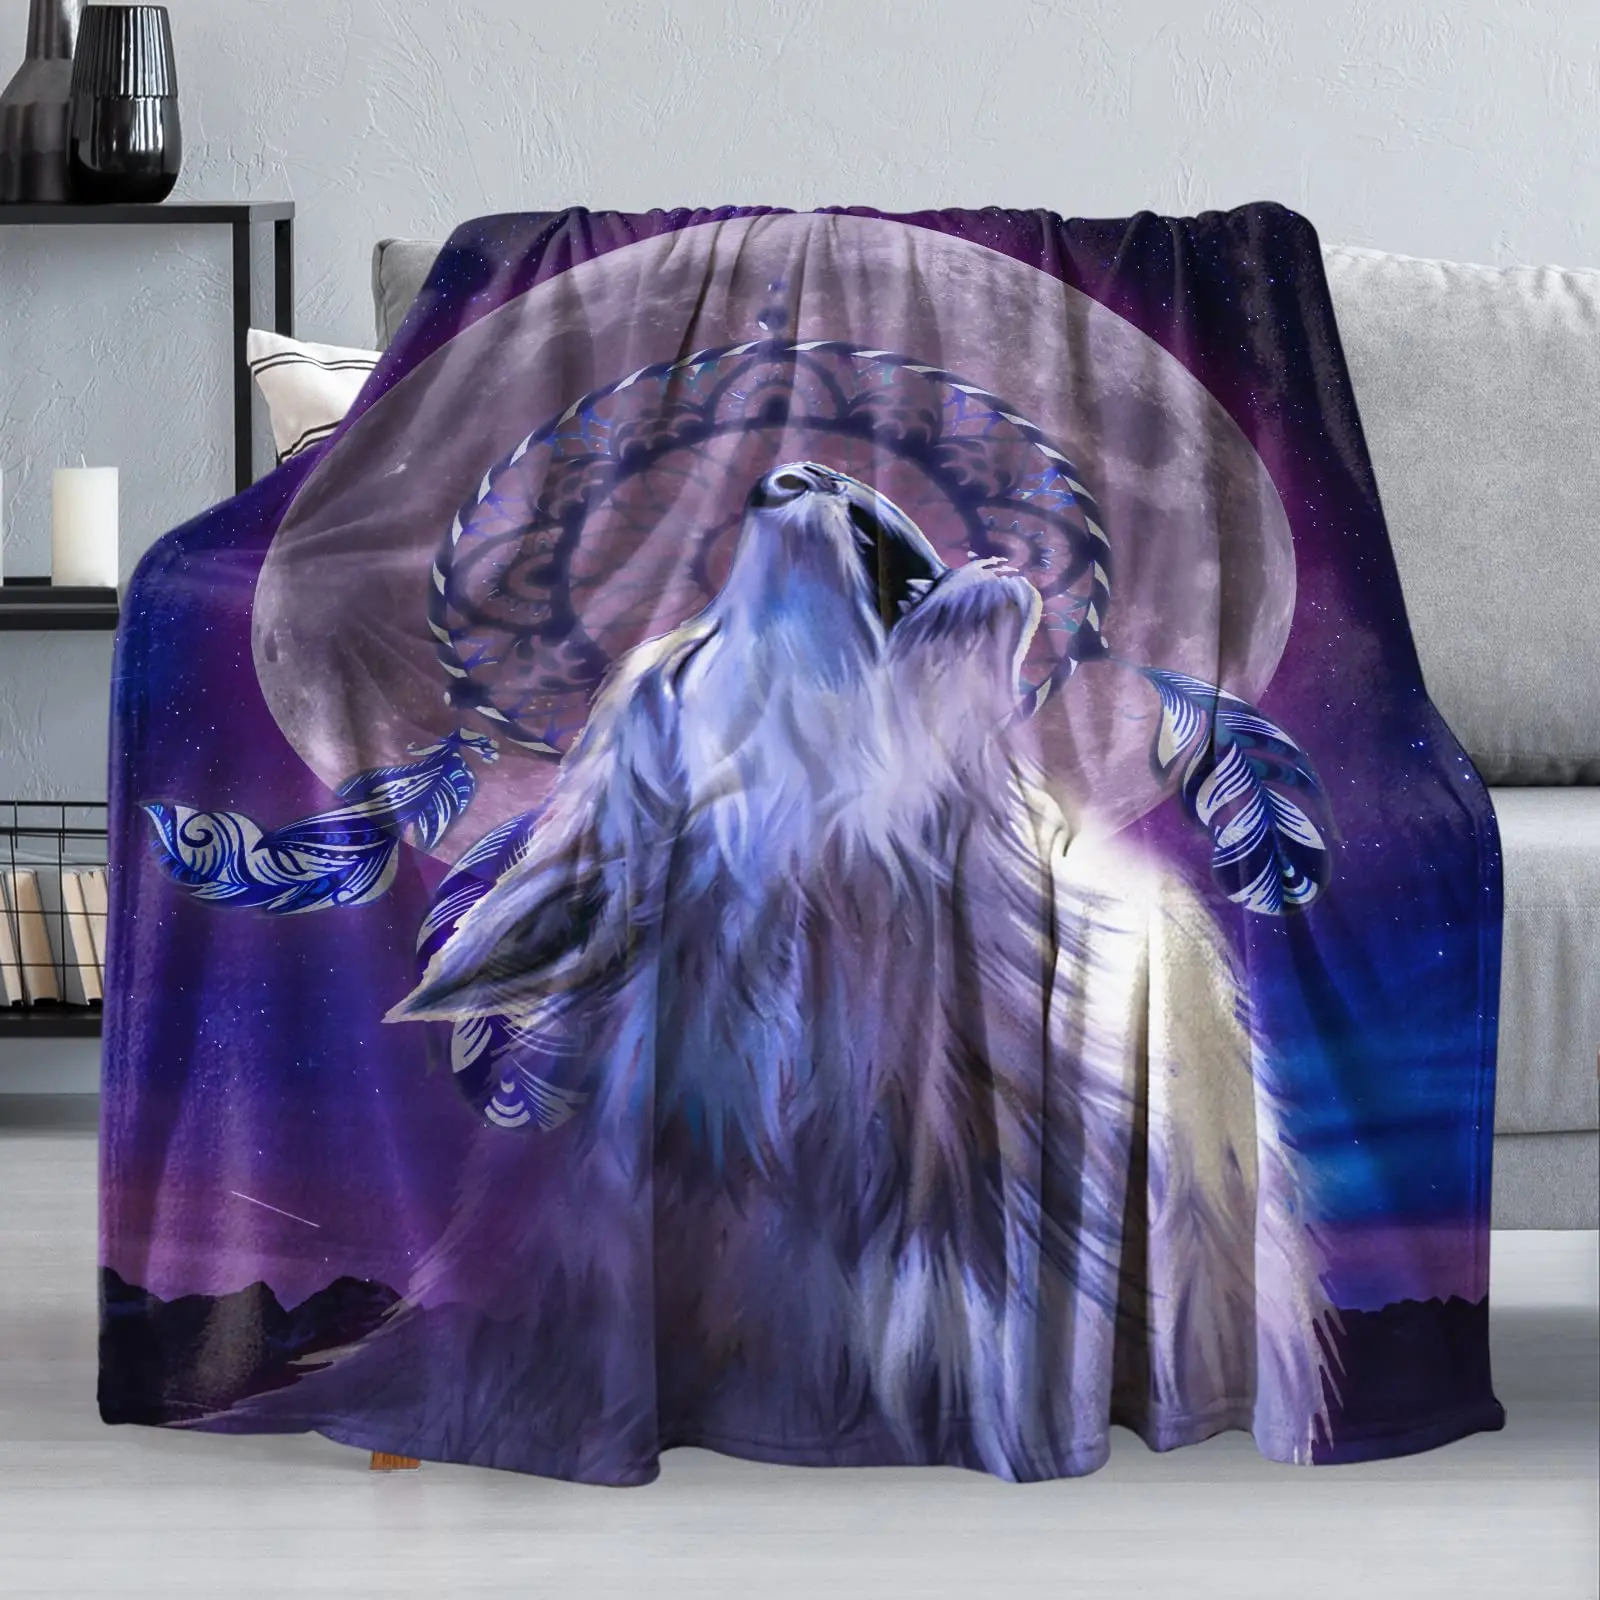 

Флисовое одеяло Синего Волка, зимнее удобное одеяло с волками в виде животных, легкое мягкое плотное теплое одеяло для кровати, кушетки, двуспальной кровати